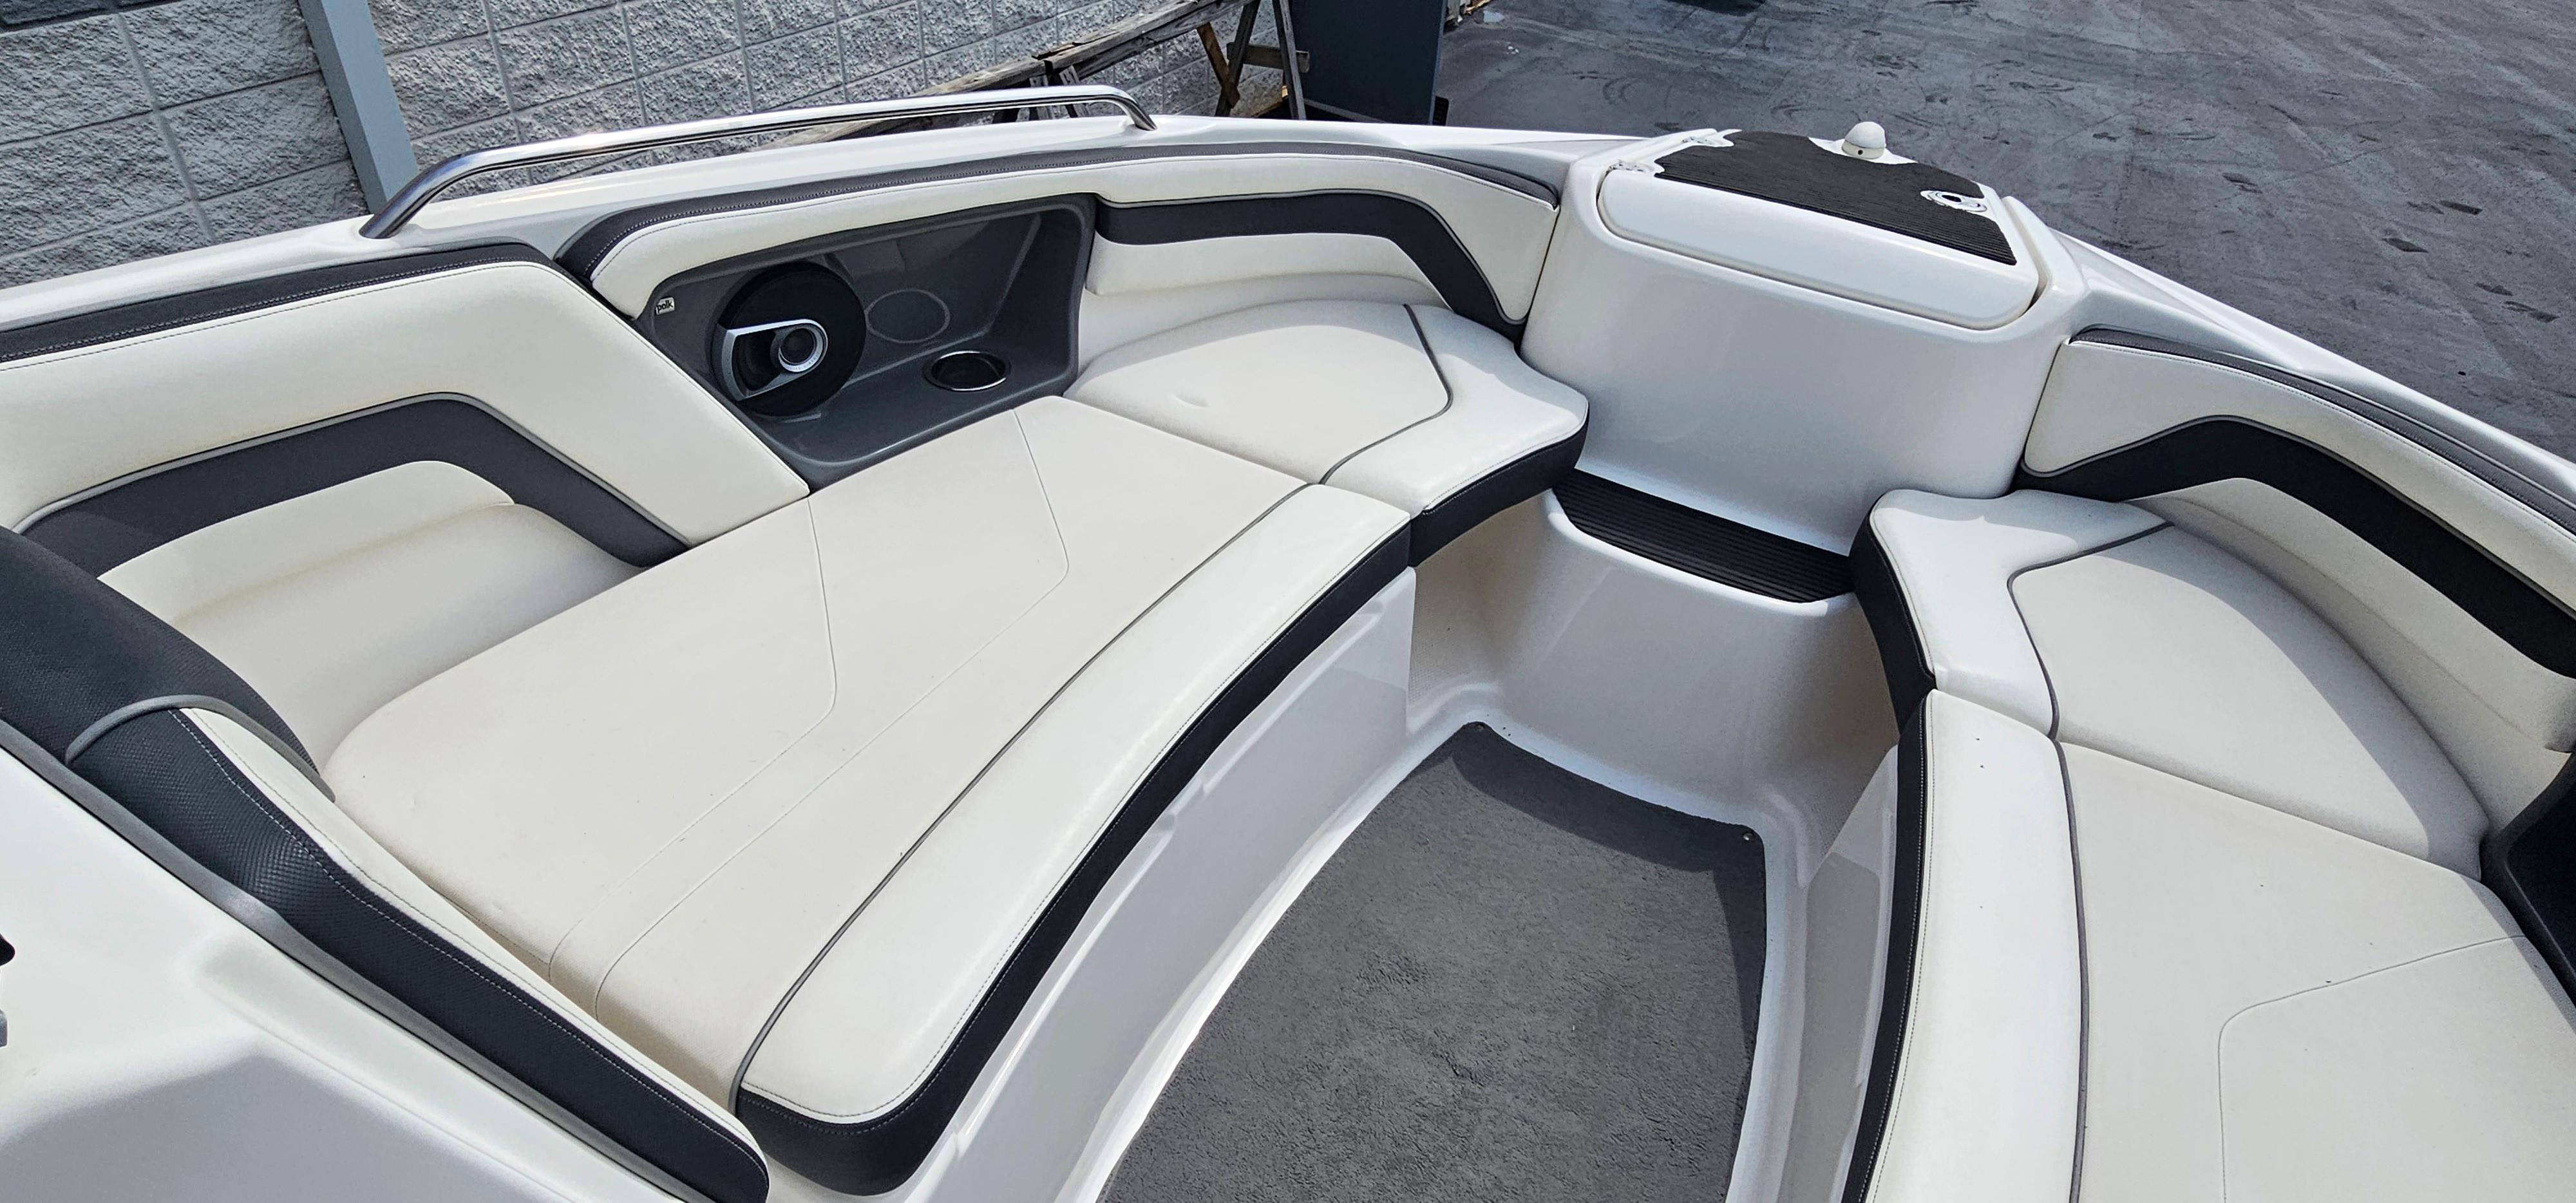 2015 Yamaha Boats AR240 HO